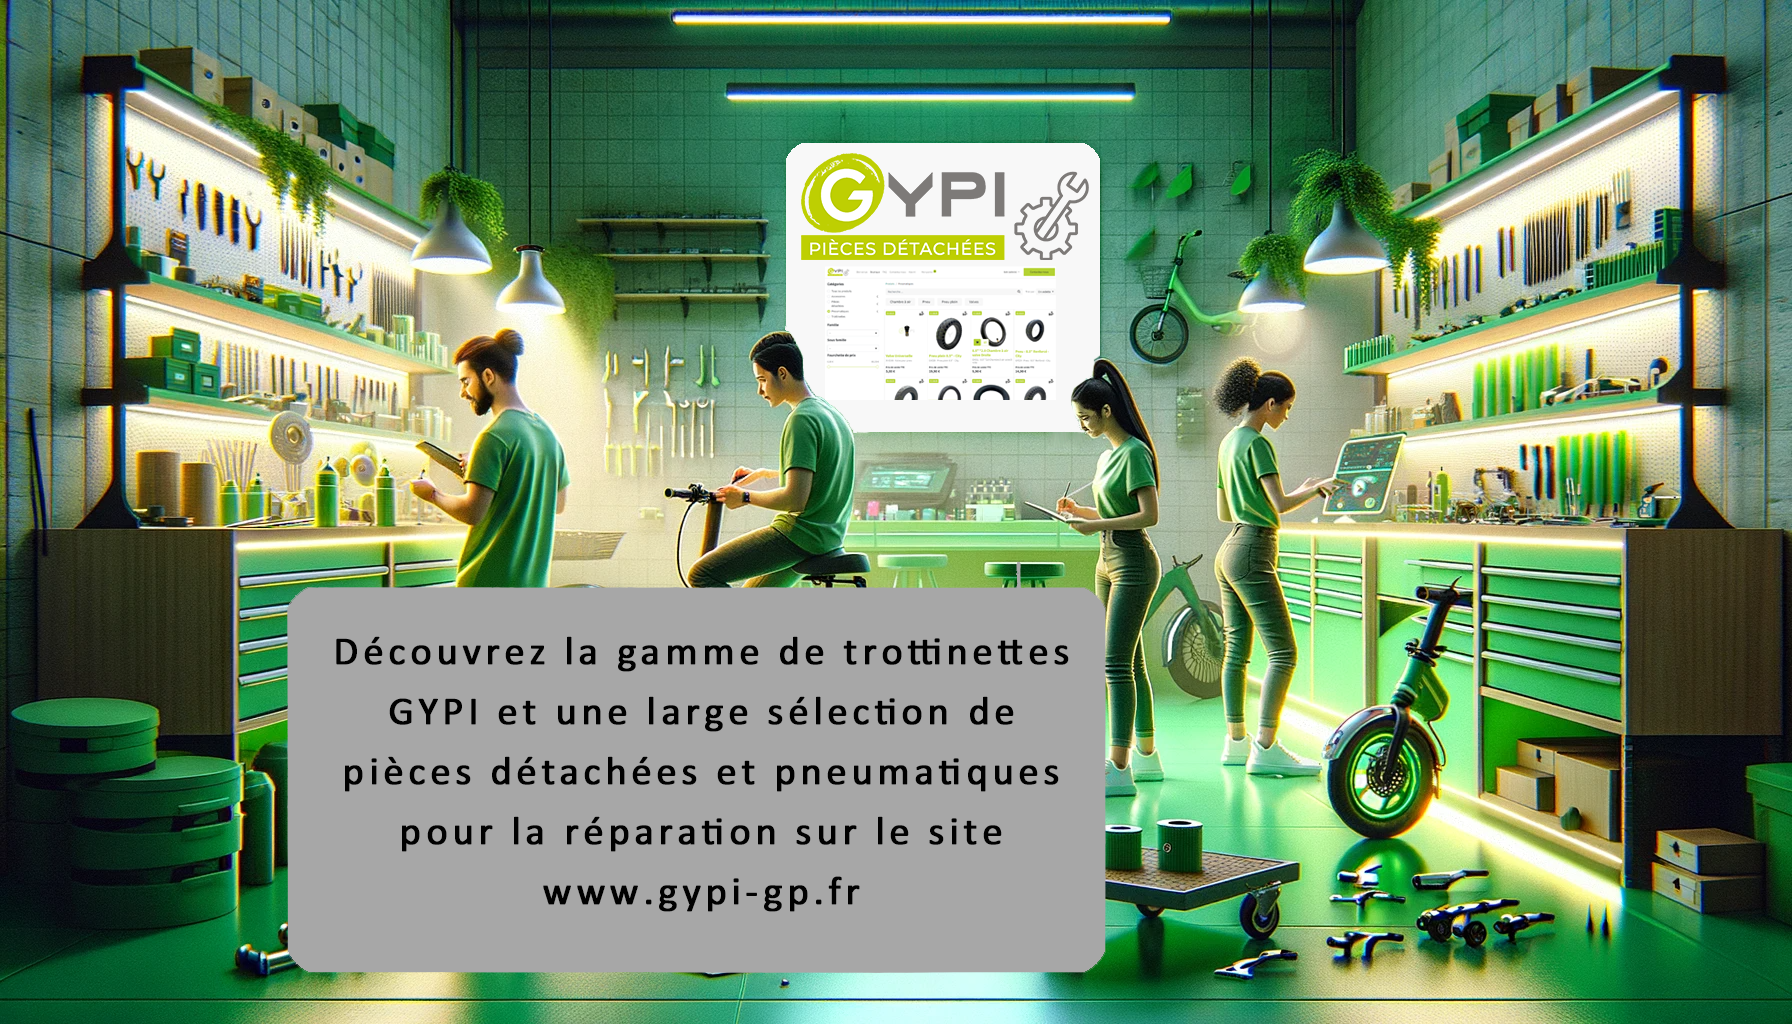 www.gypi-gp.fr